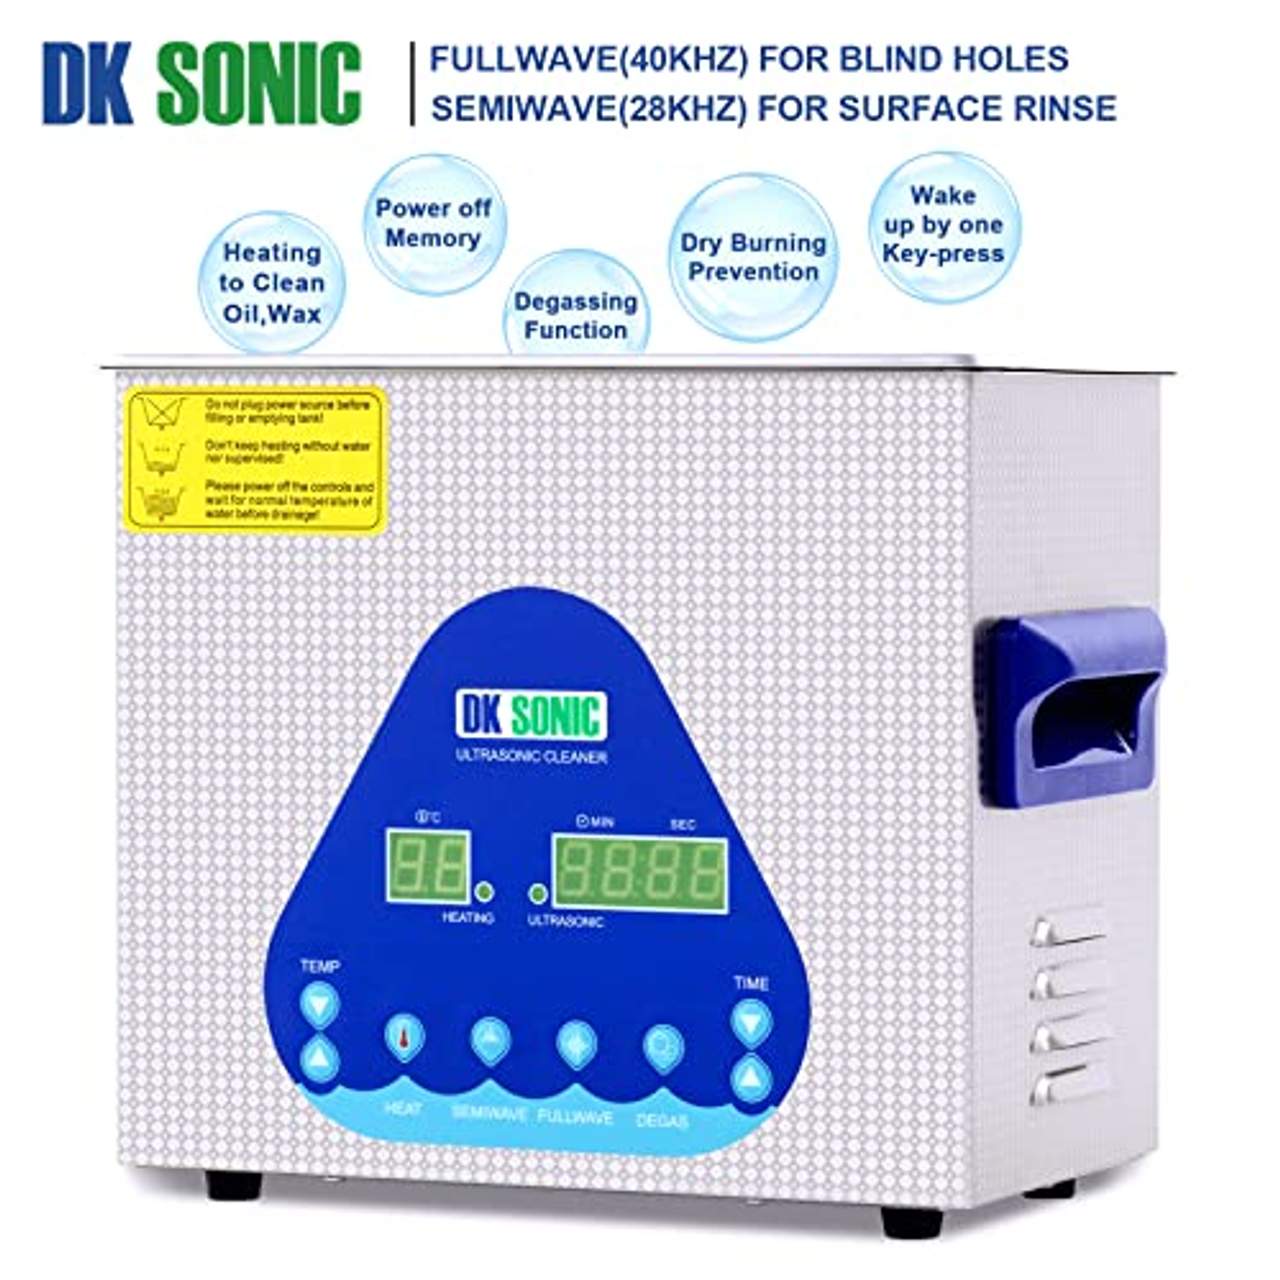 DK SONIC 3LUltraschallreiniger mit Semiwave und Fullwave Modi für Reinigung von Schmuck Uhren Gläser